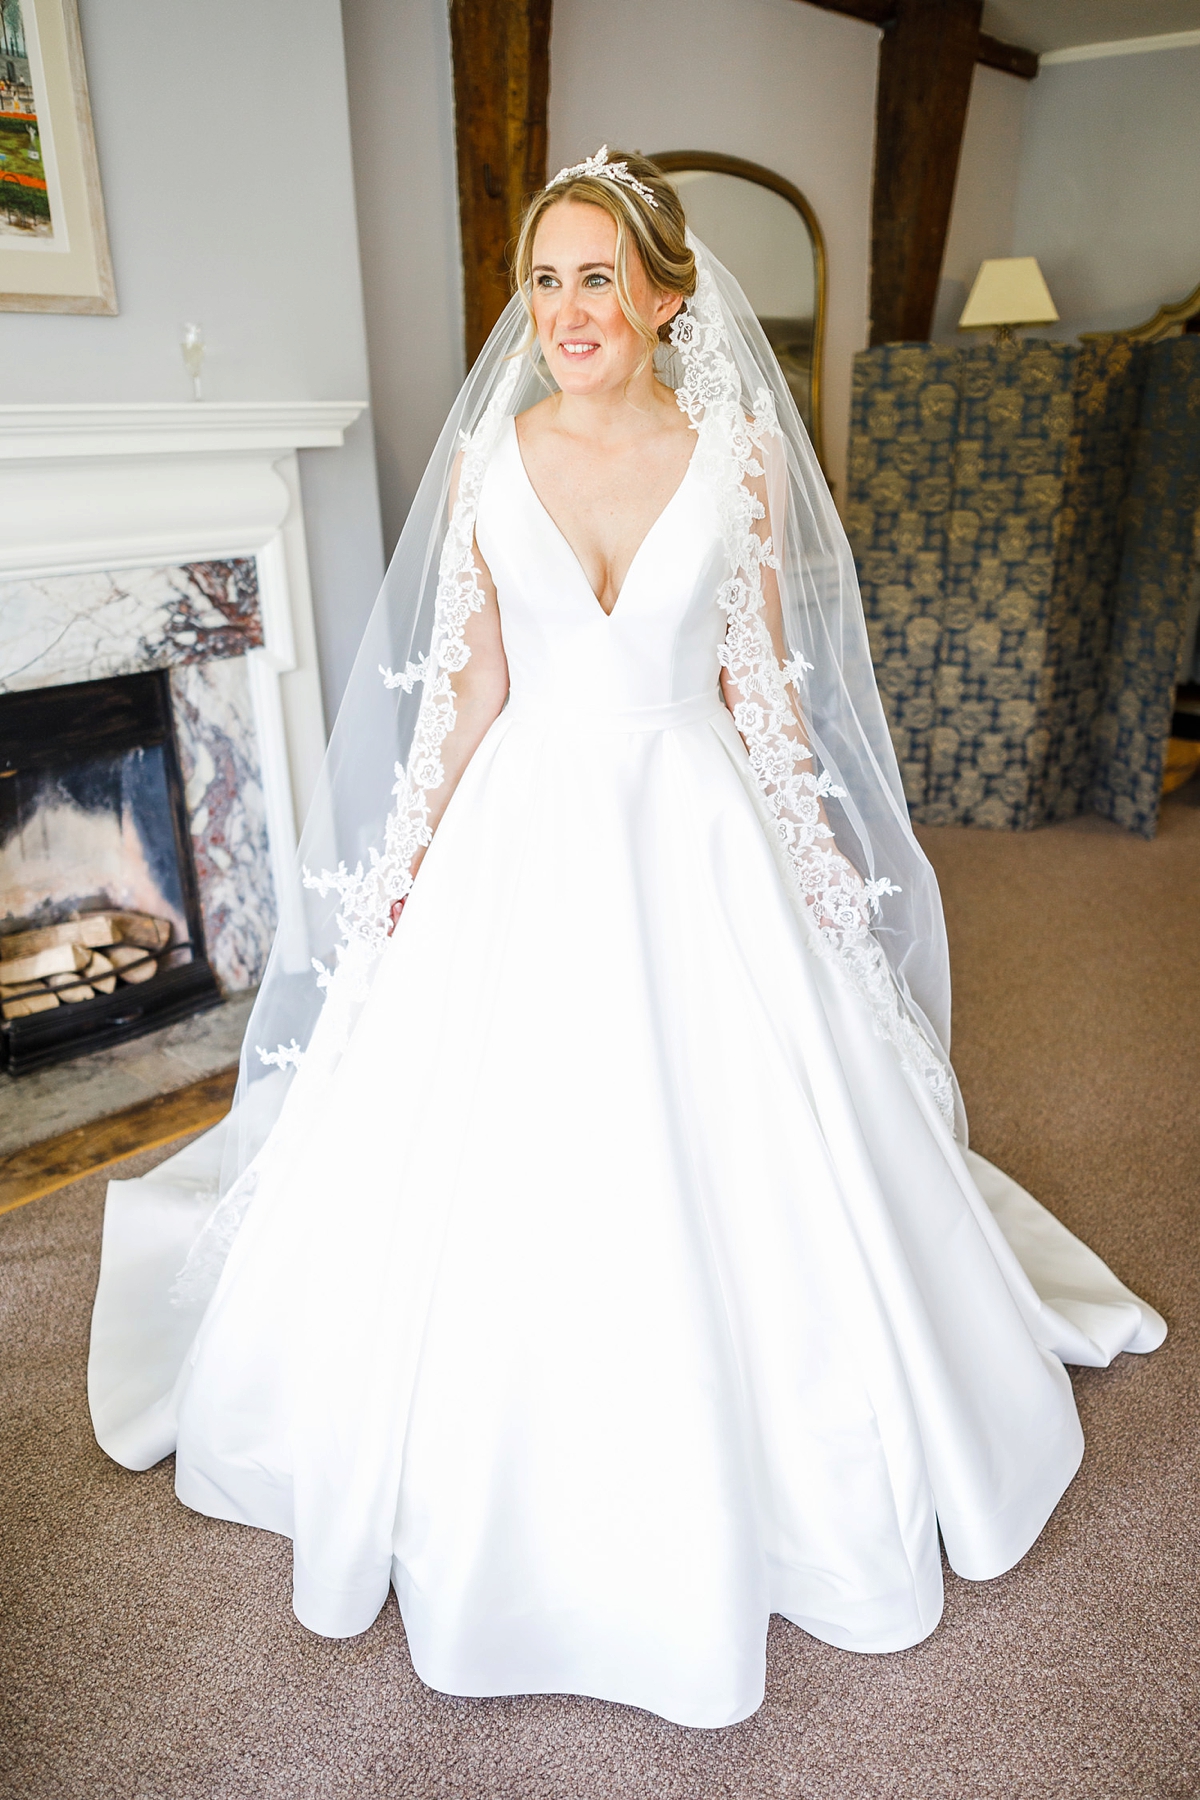 11 Allure Bridals dress Brinsop Court wedding Herefordshire